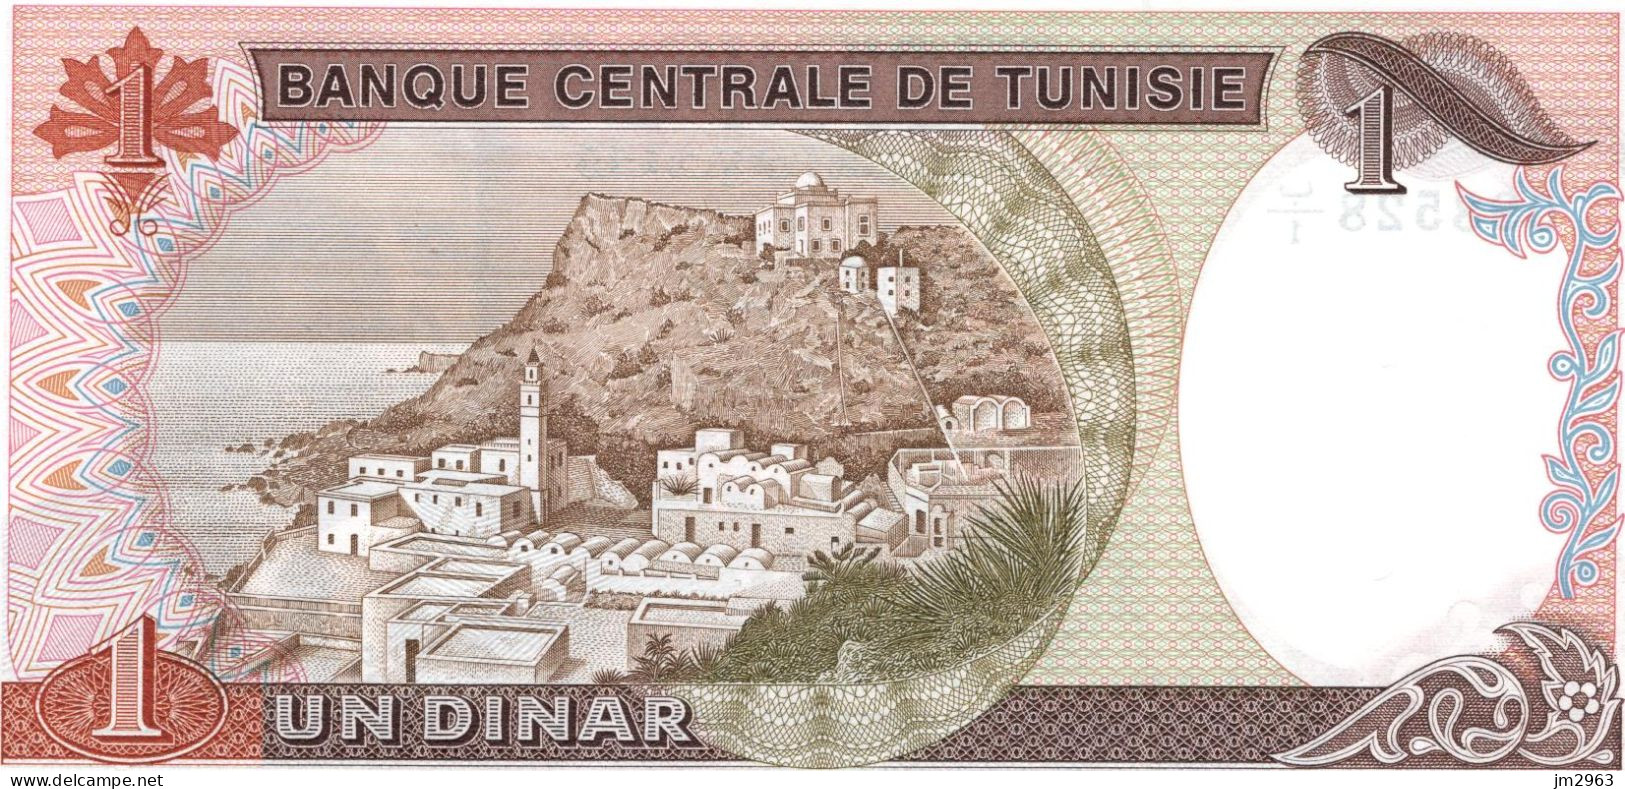 TUNISIE 1 DINAR 15.10.1980 UNC  B1/098528 - Tusesië